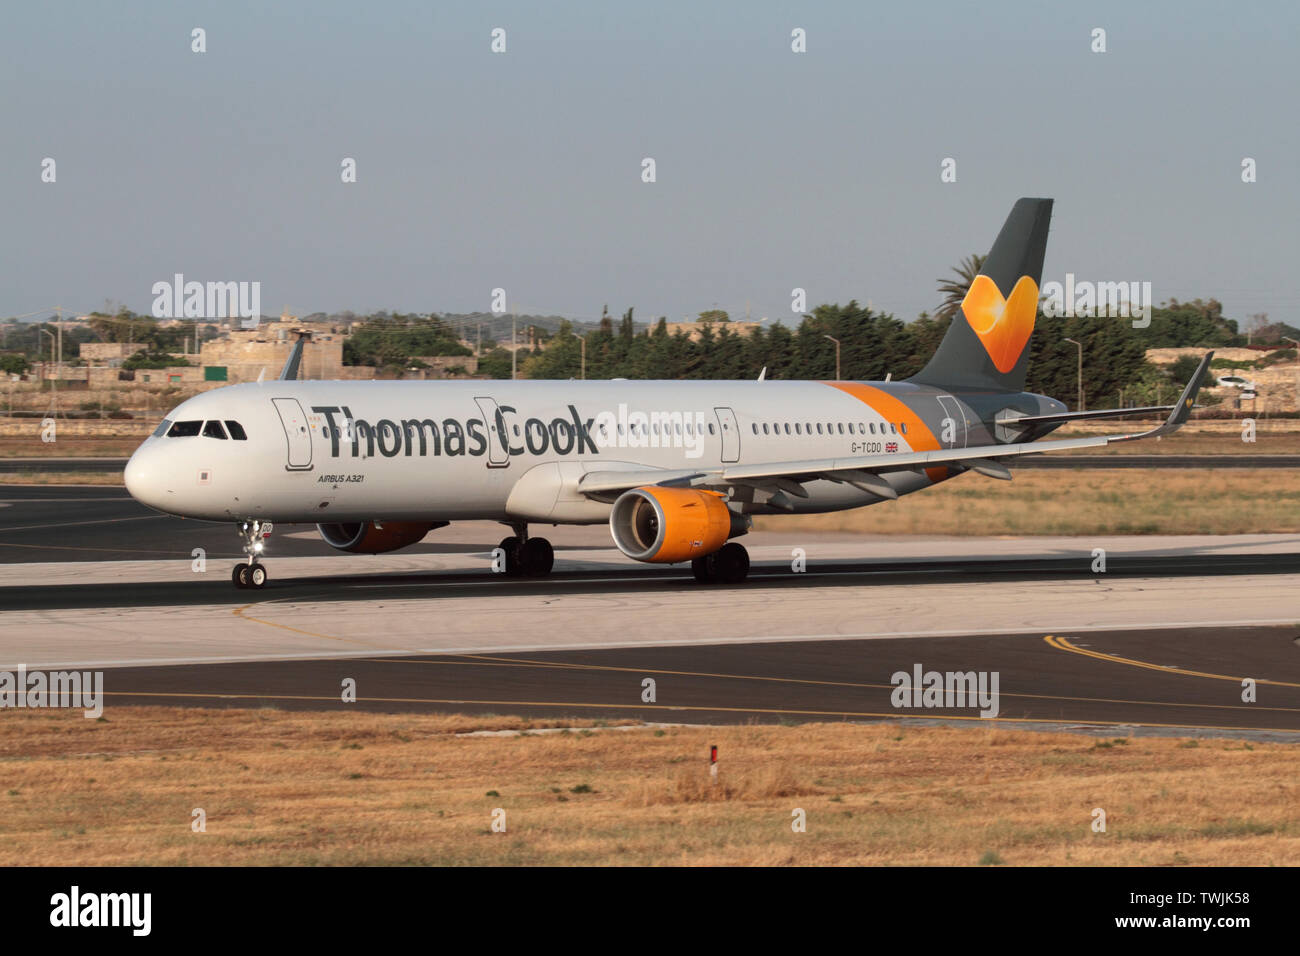 Thomas Cook Airlines Airbus A321 commercial Passenger Jet Flugzeug aus Malta. Zivile Luftfahrt und Luftverkehr. Stockfoto